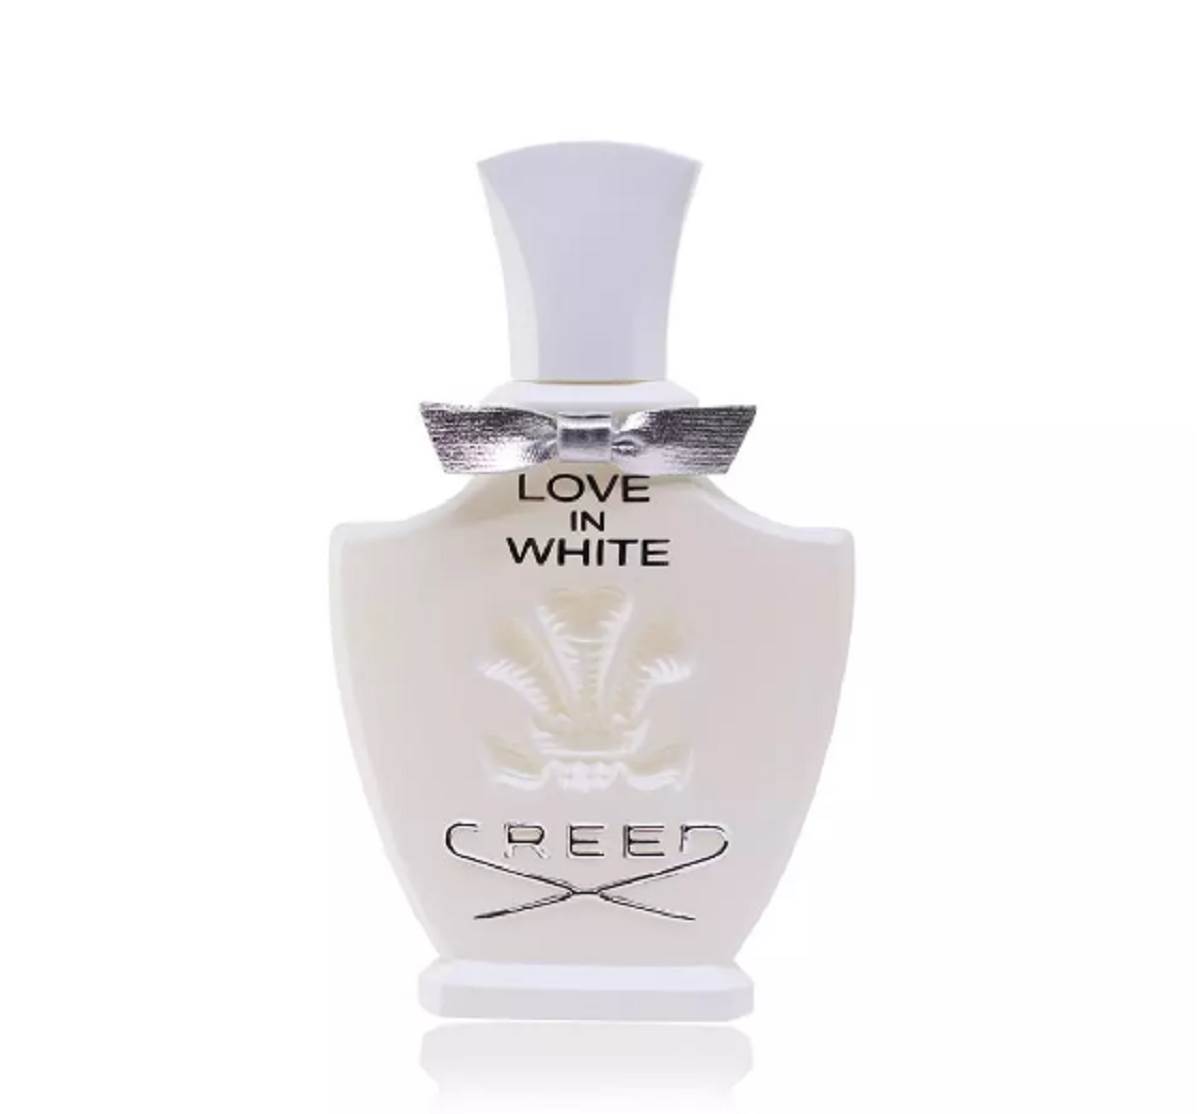  Najčešći izbor parfema Ane Ivanović je Creed - Love in White. 